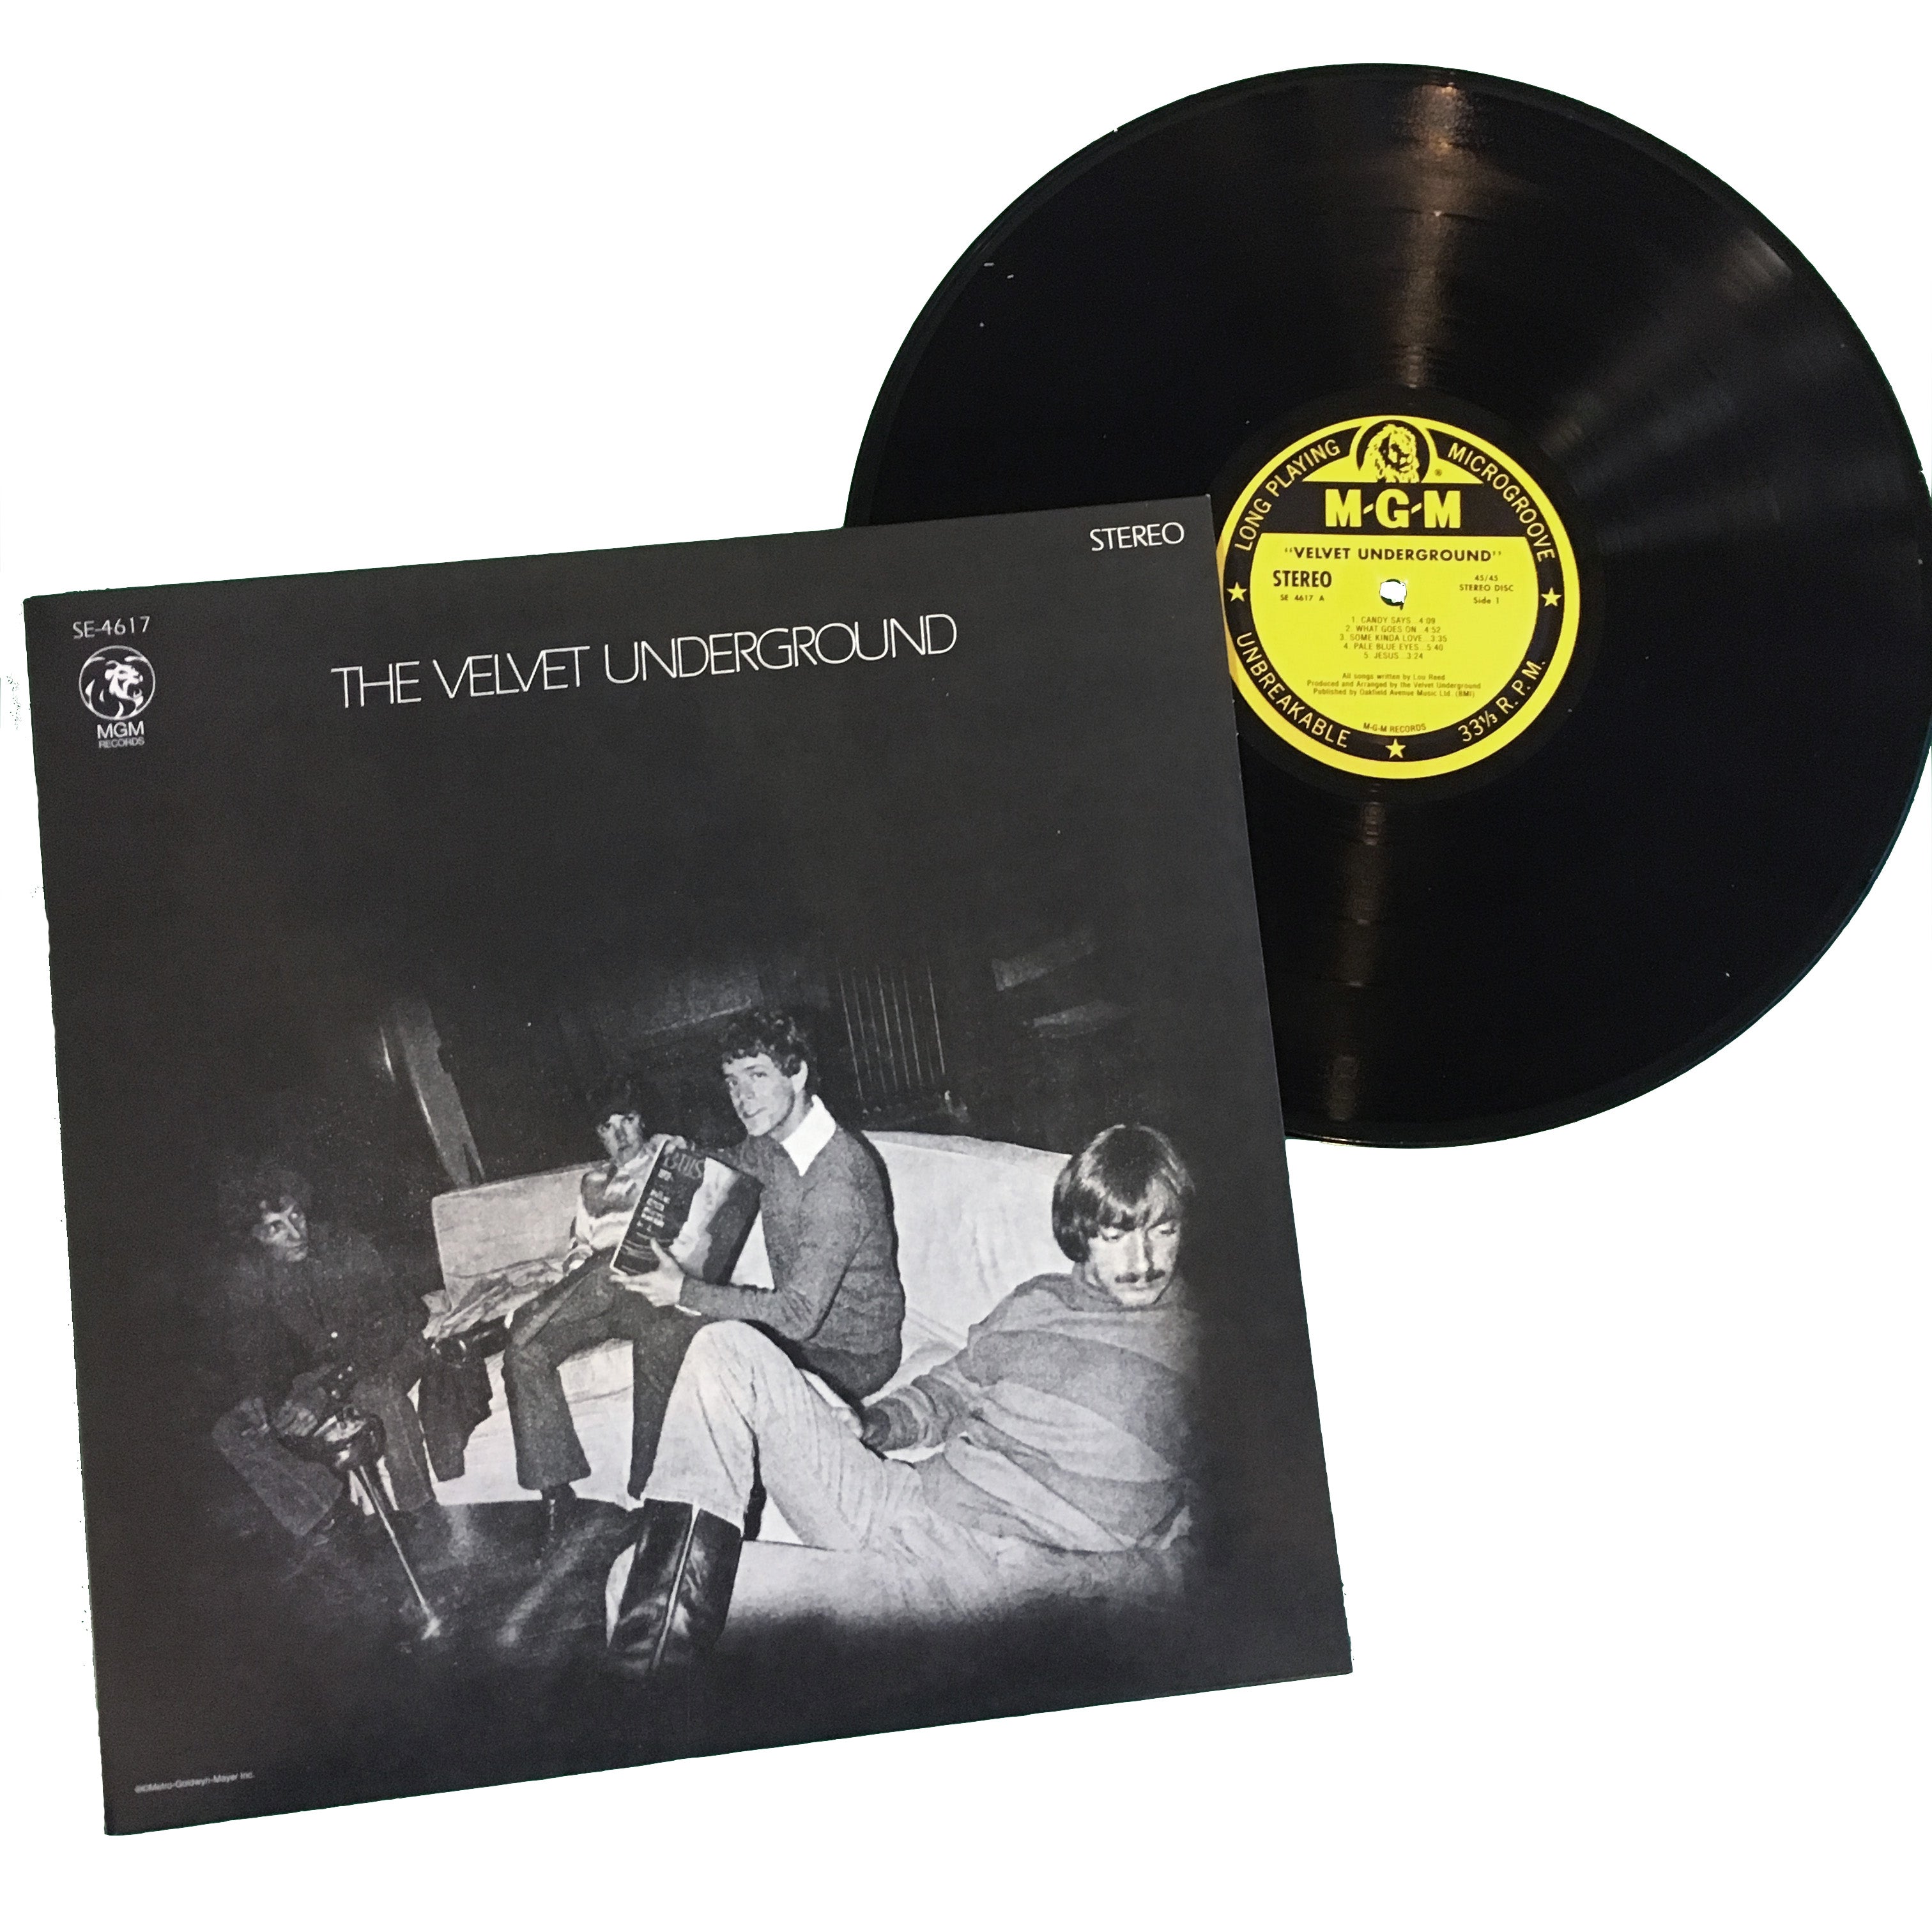 数量は多 Velvet Underground The Set / MGM 5-LP Albums Archive レコード